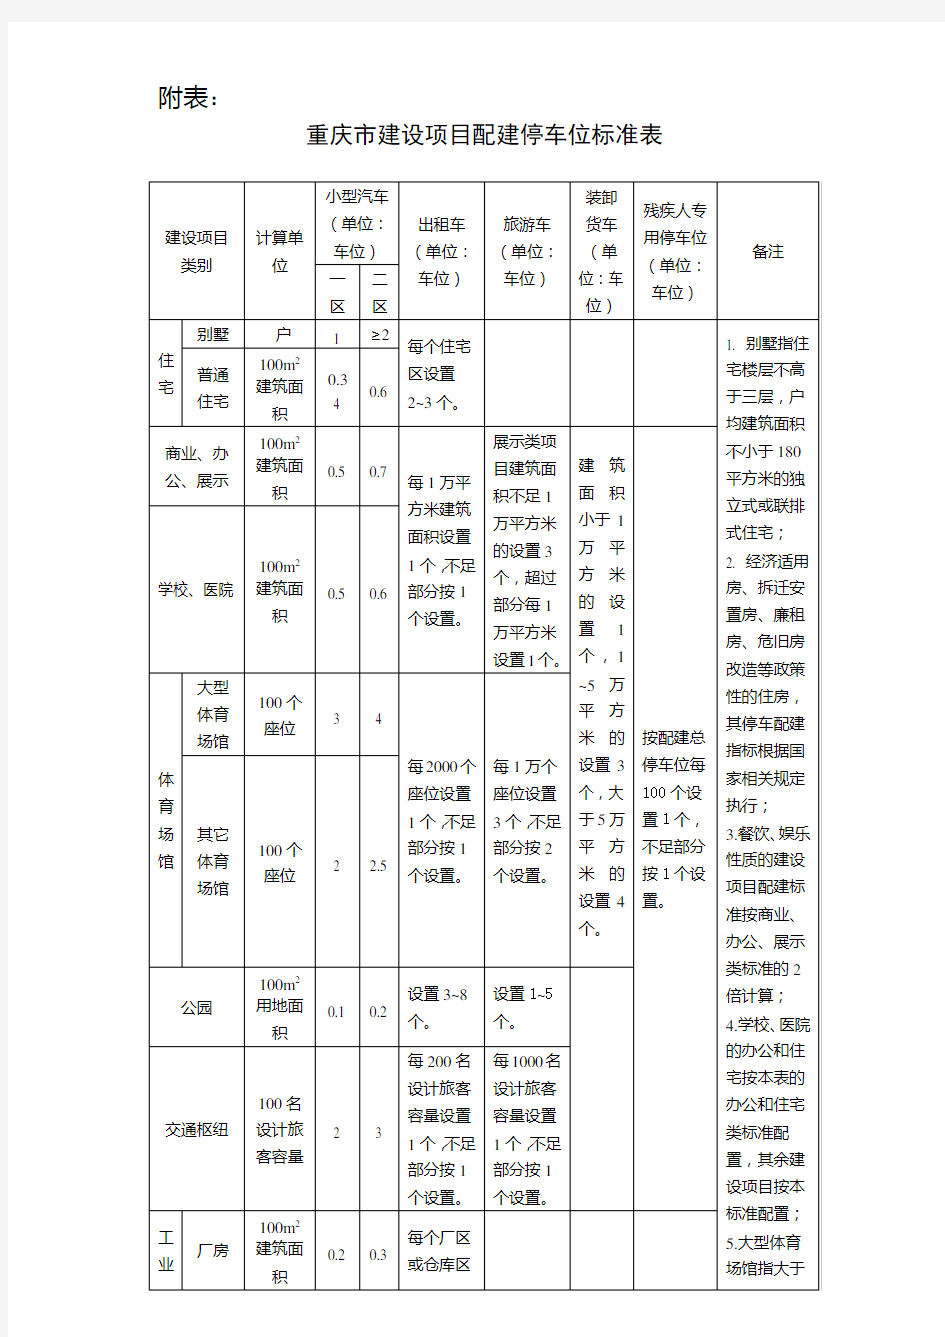 重庆市建设项目配建停车位标准表